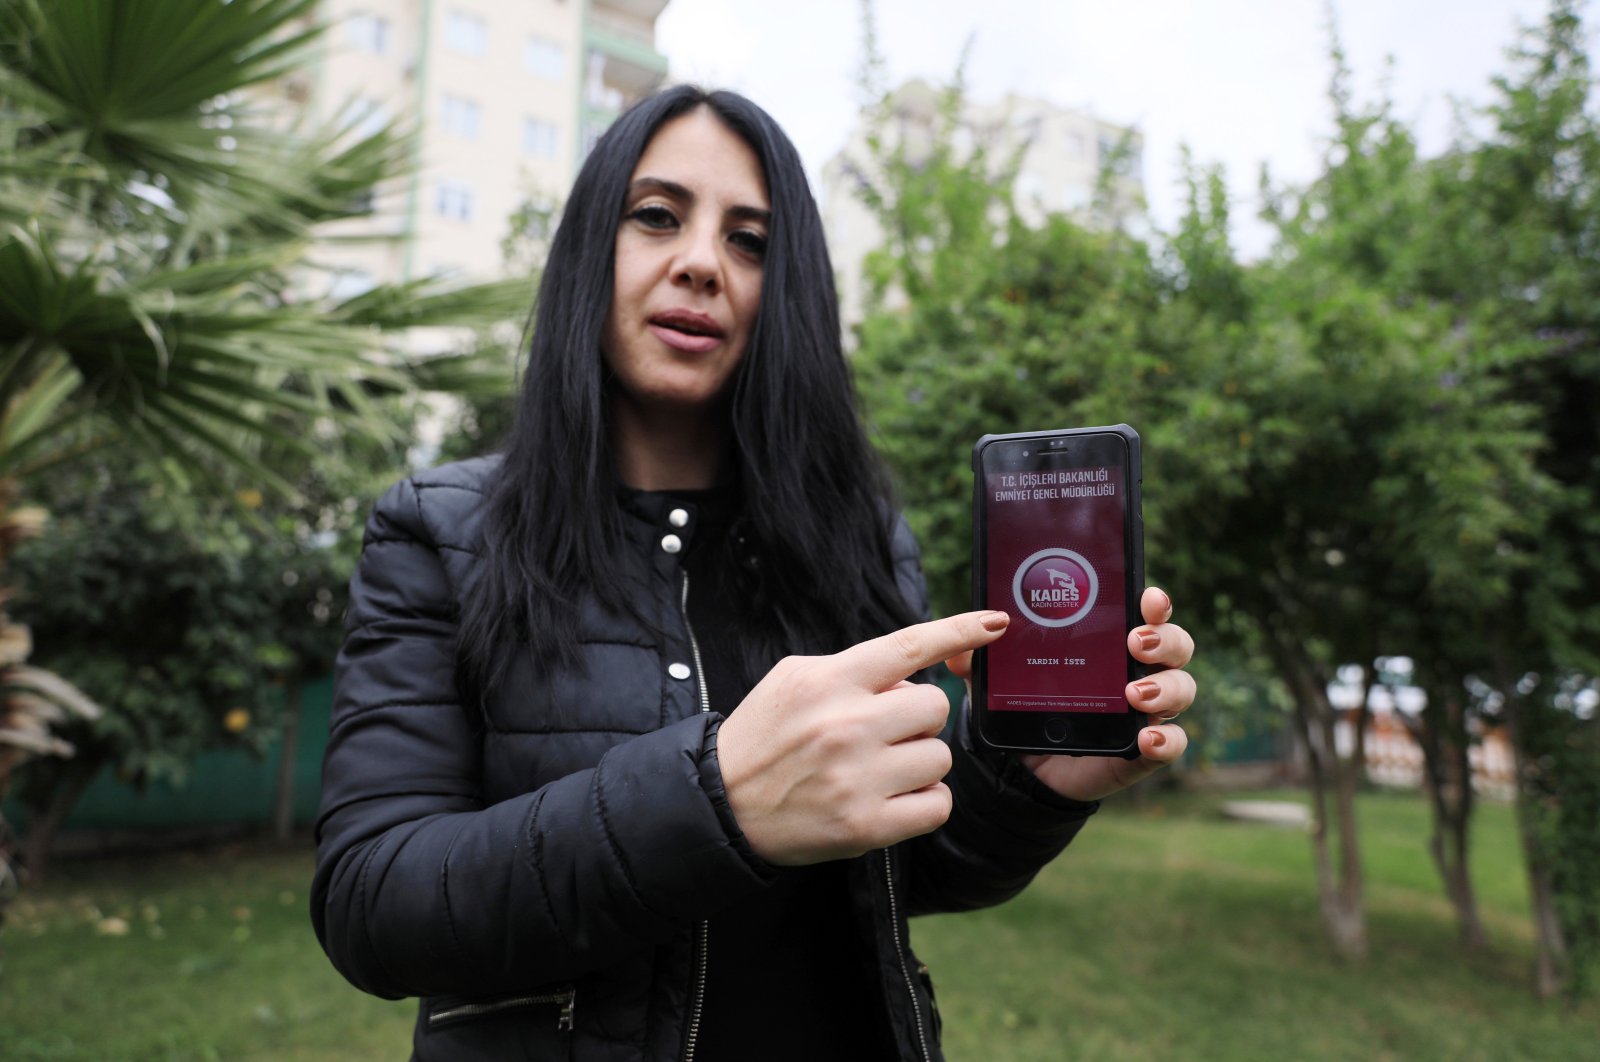 Aplikasi menyelamatkan ribuan dari kemungkinan kekerasan dalam rumah tangga di Turki